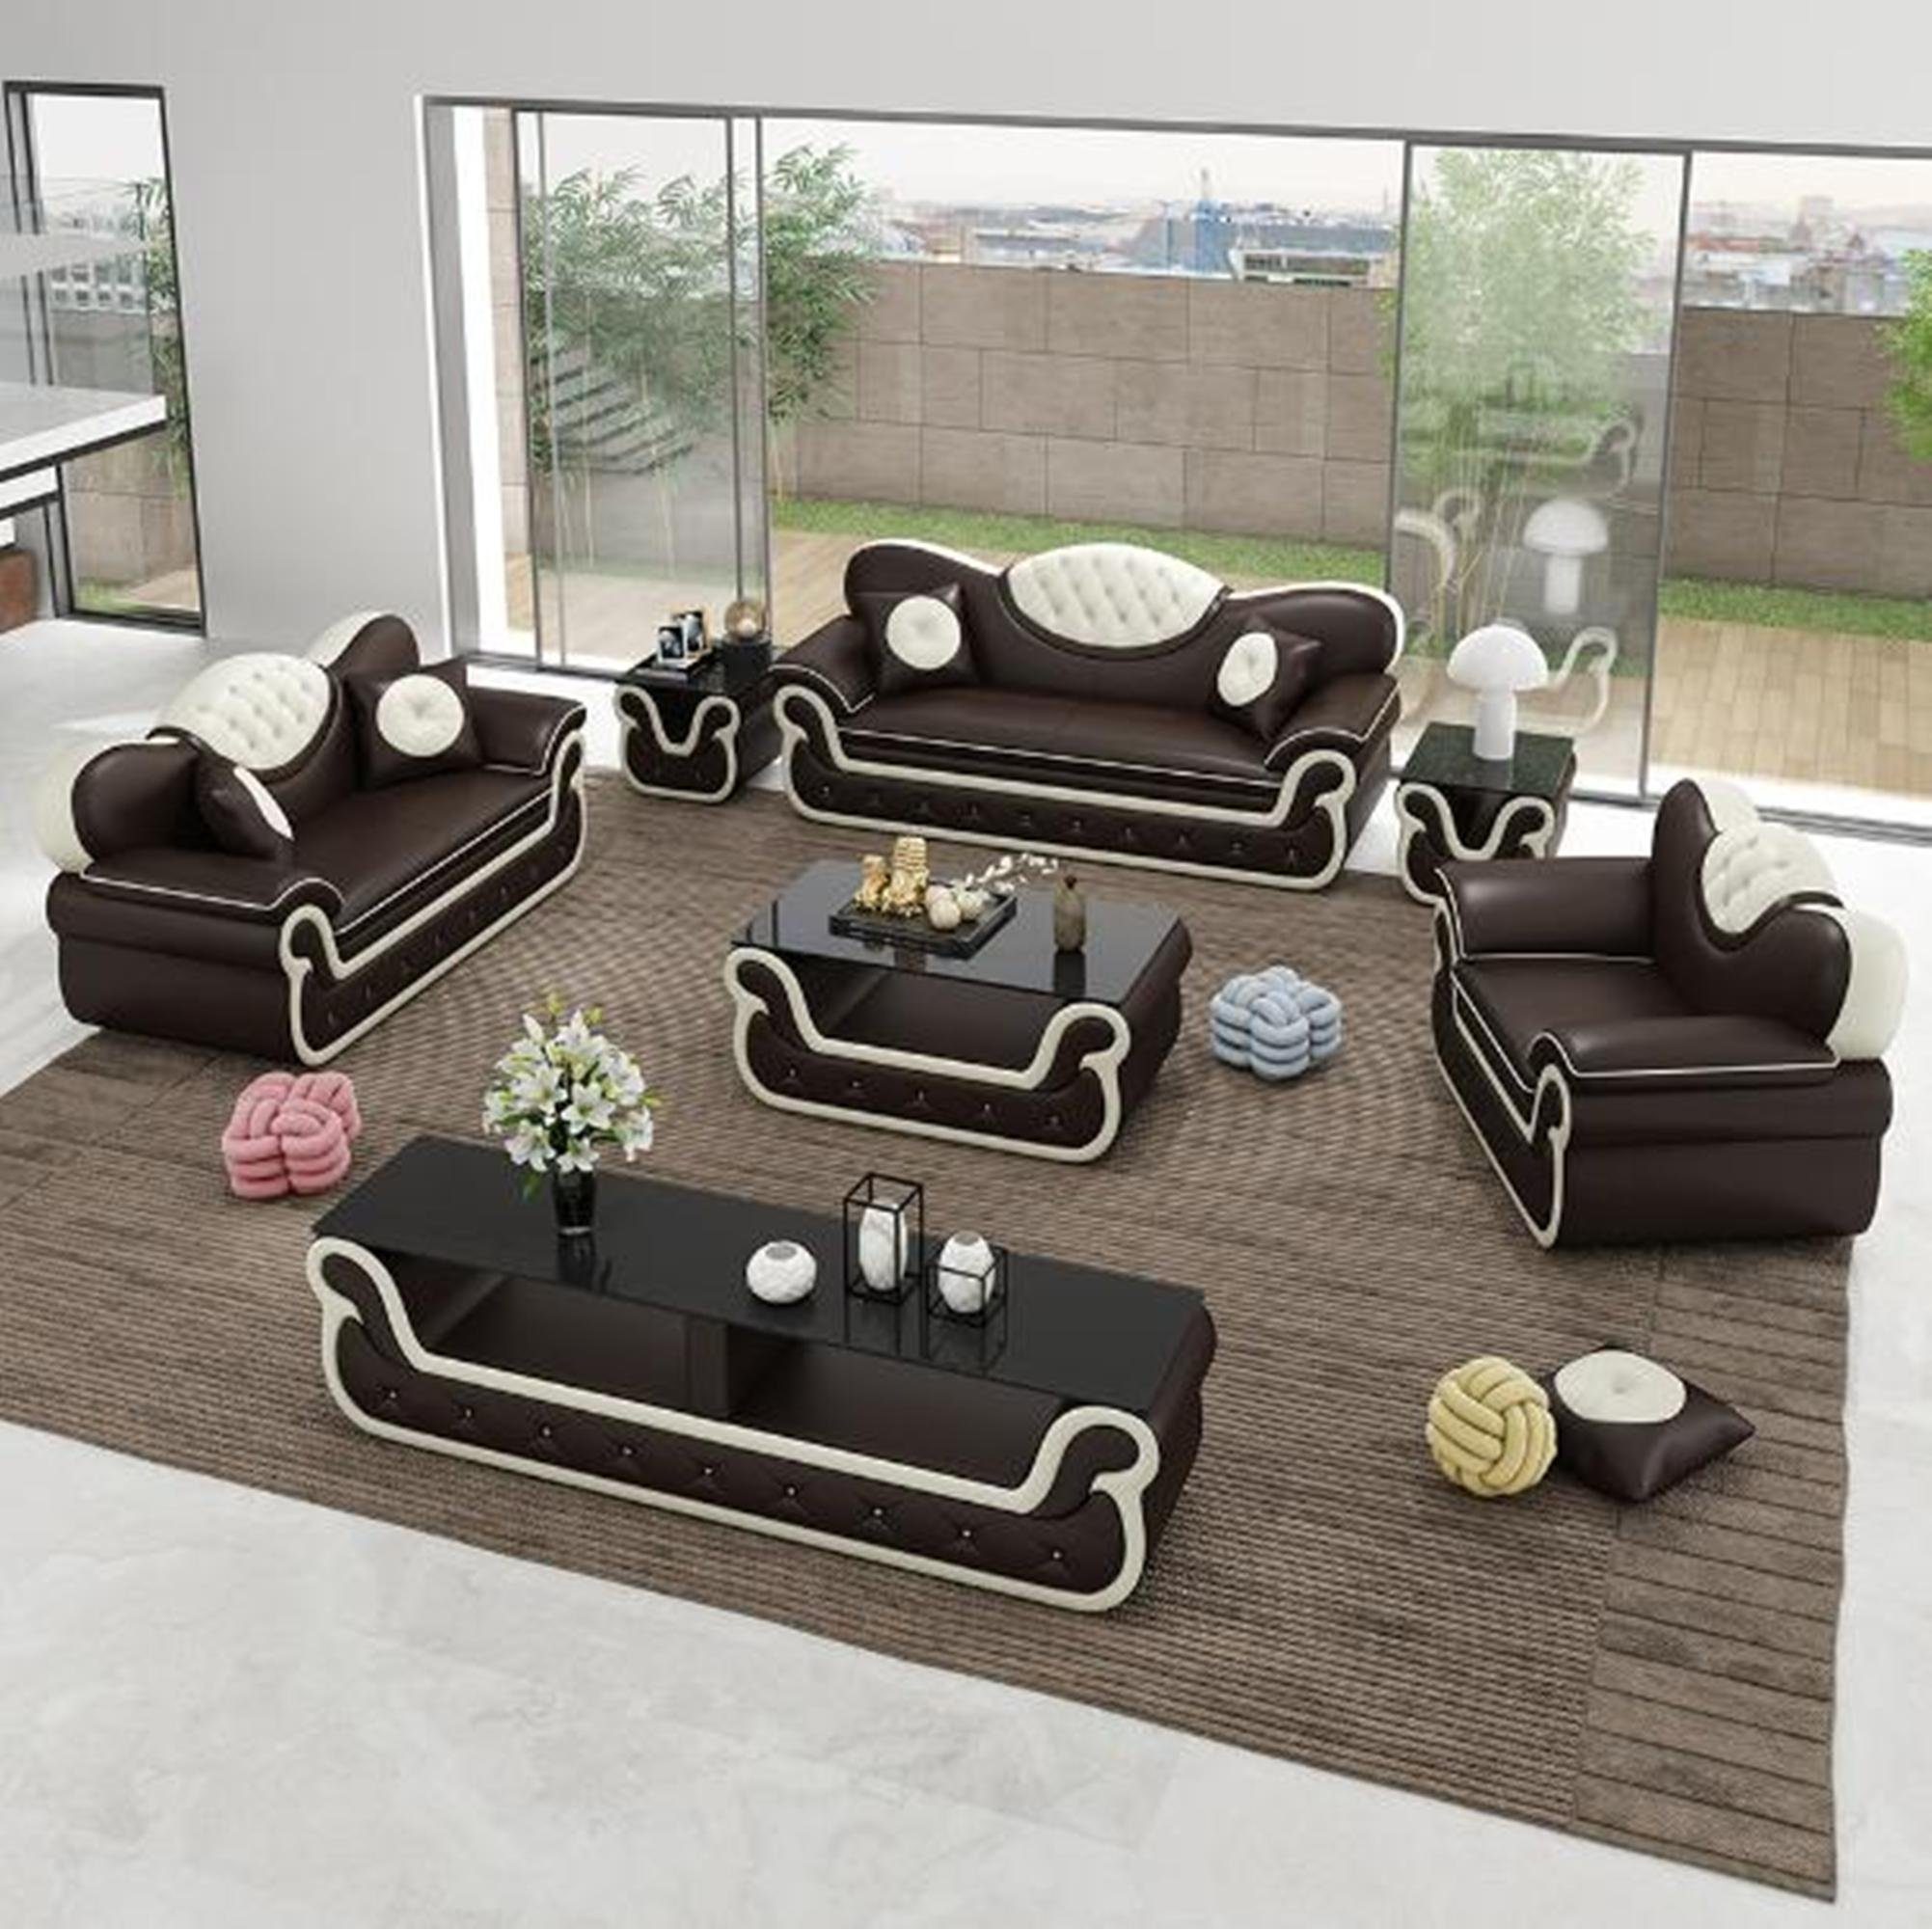 JVmoebel Sofas Sofa Polster 3+1+1 Stoff, in Moderne Couch Braun/Beige Europe Couchen Made Sofagarnitur Sitzer